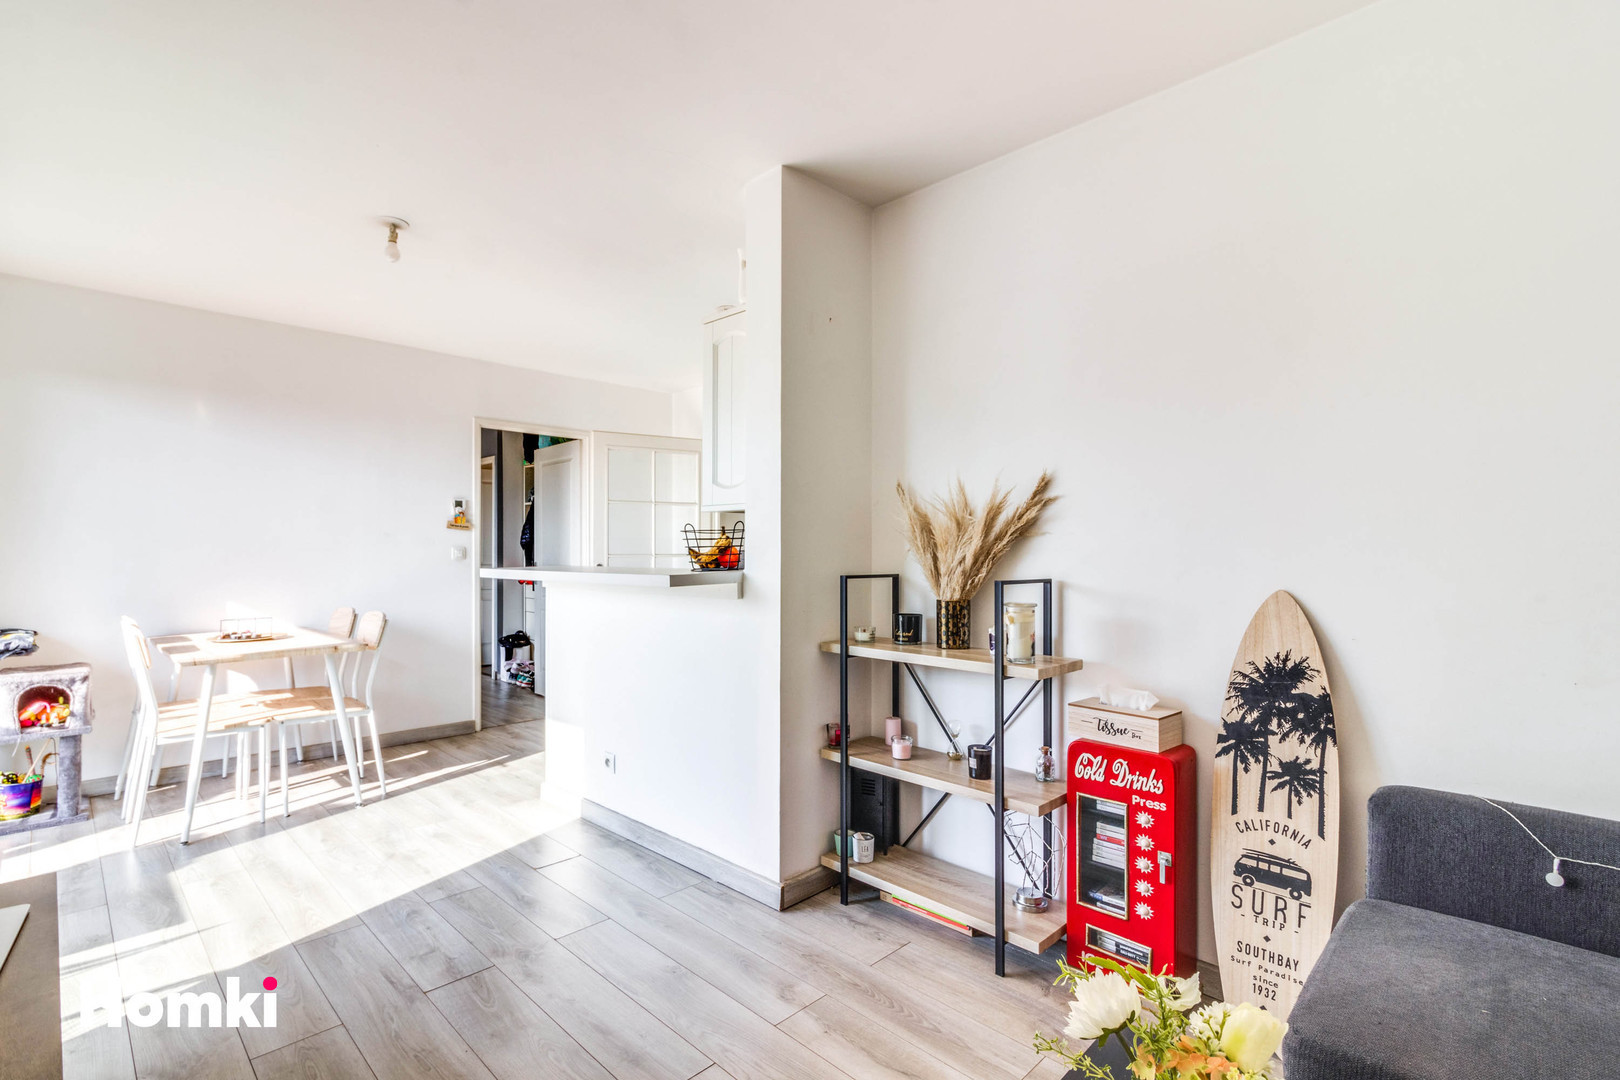 Homki - Vente Appartement  de 41.0 m² à Tourcoing 59200